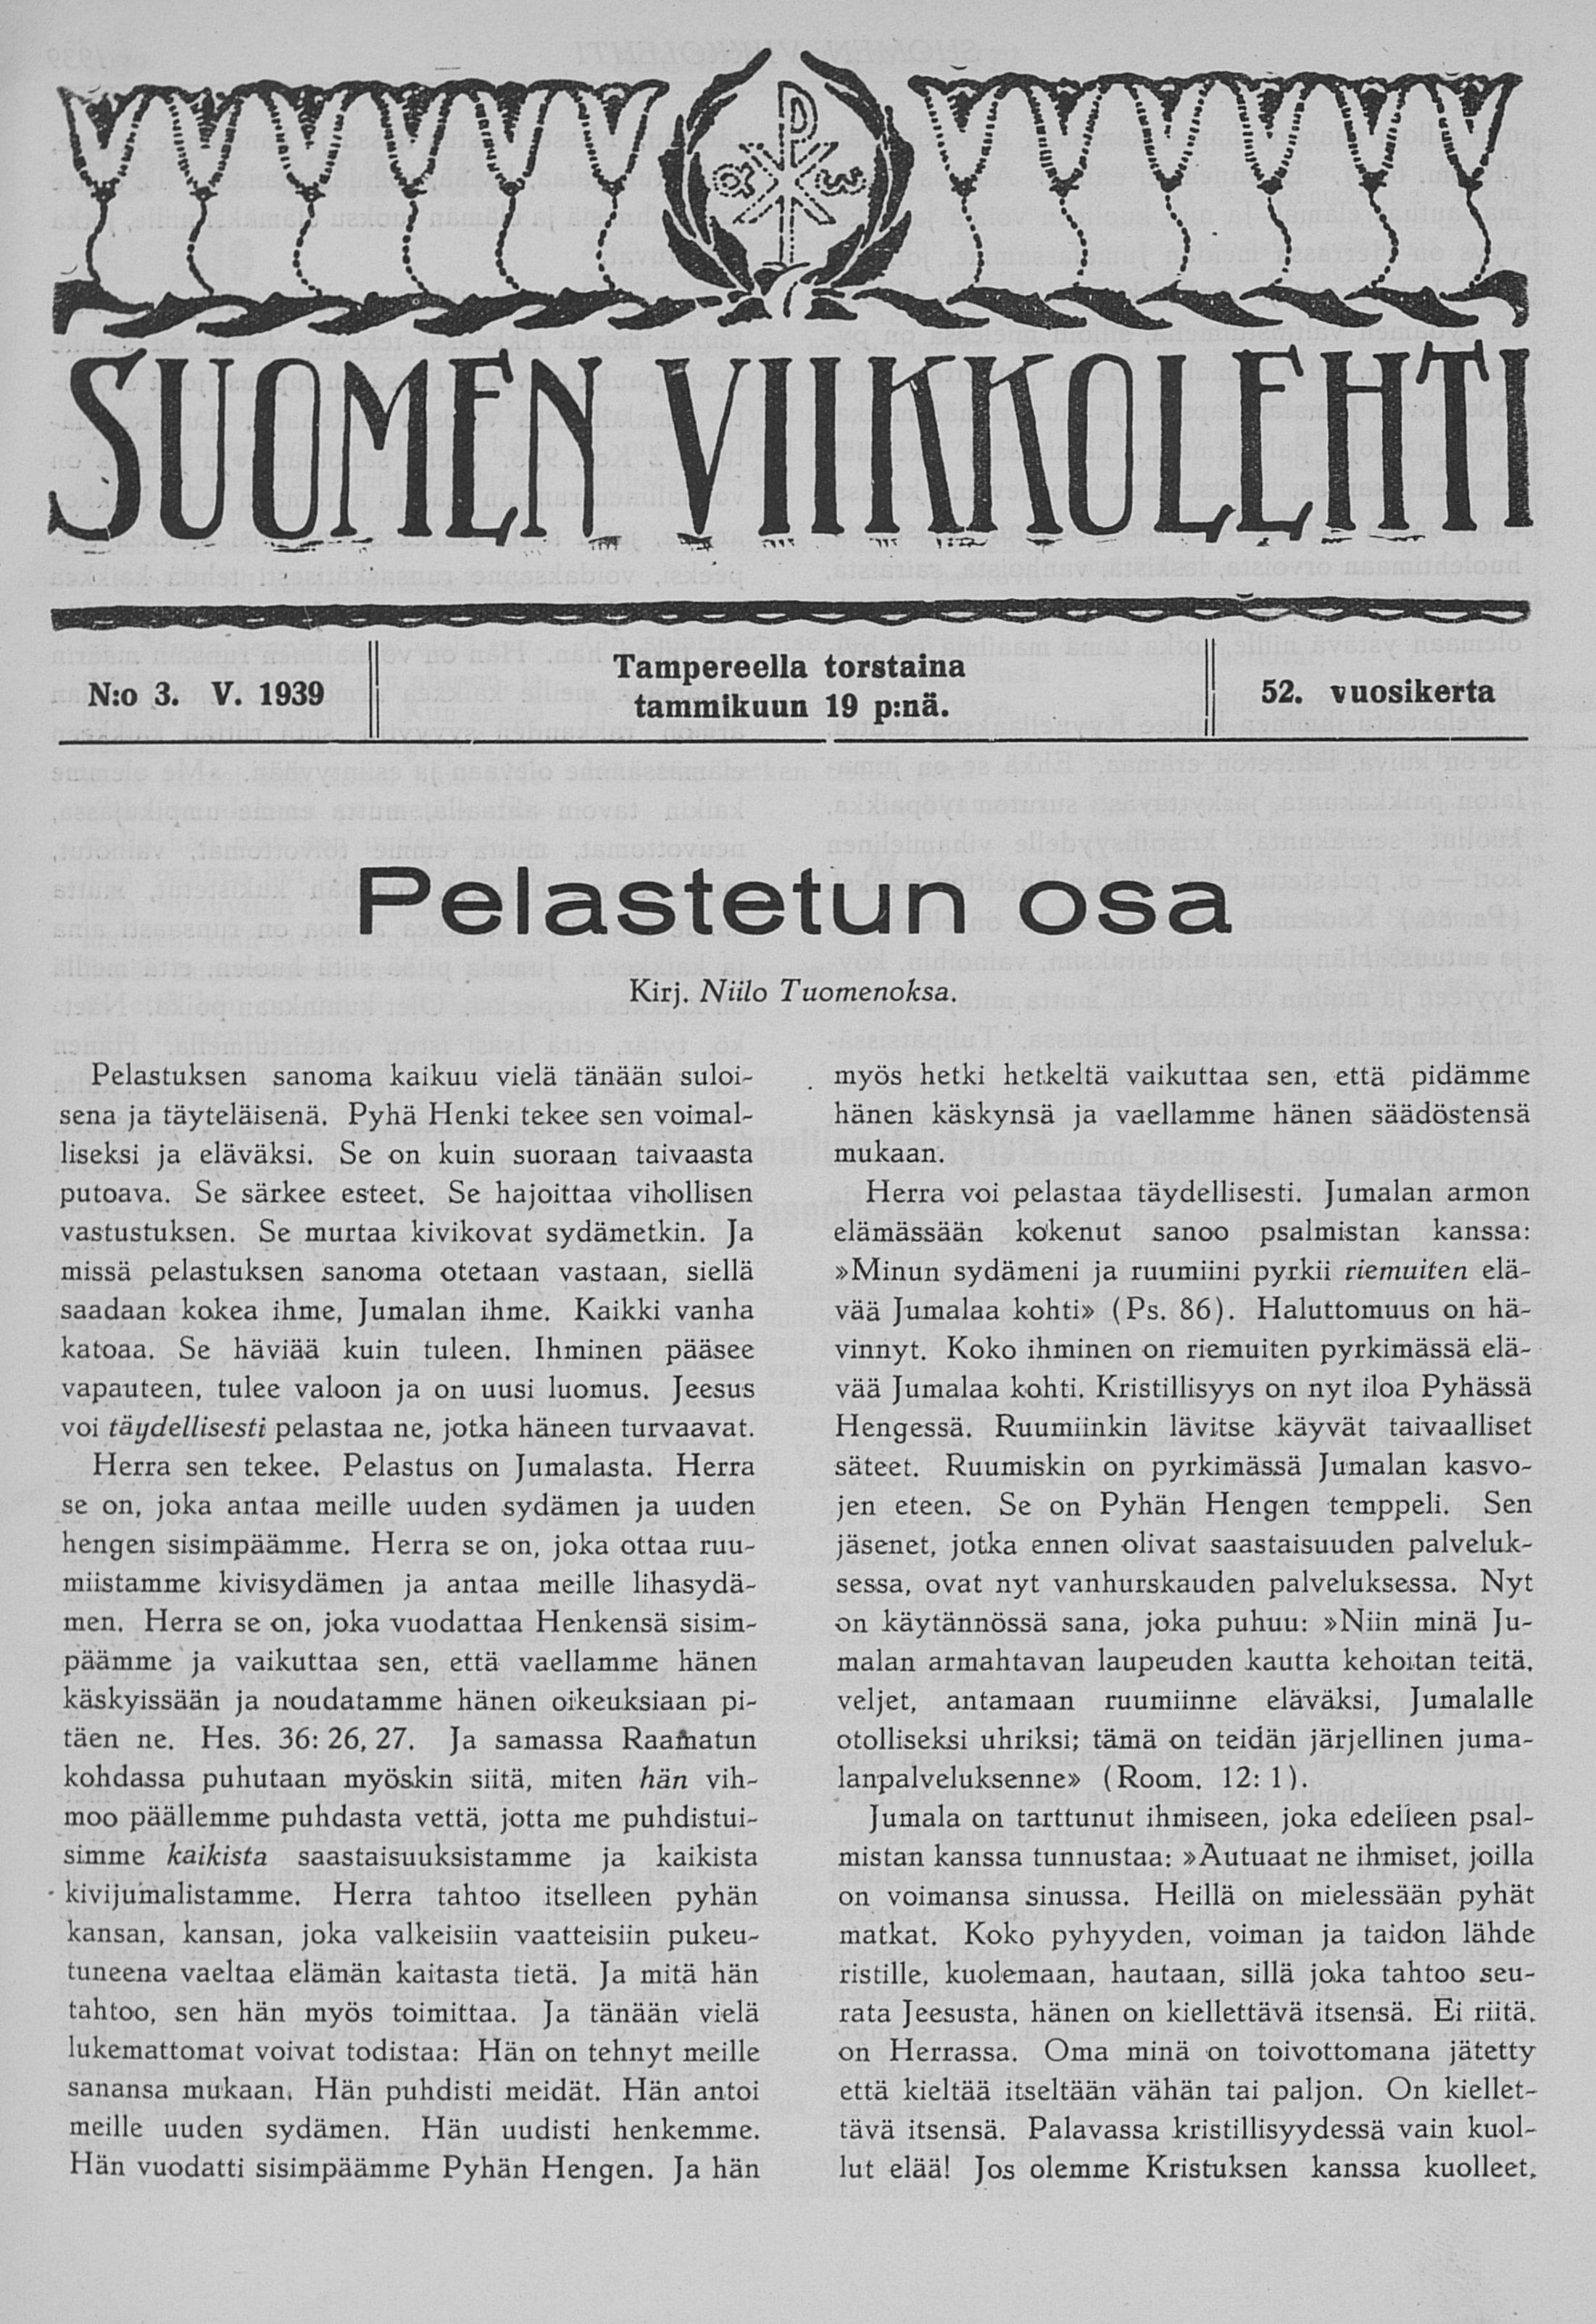  Suomen Viikkolehti no 3 - Digitaaliset aineistot -  Kansalliskirjasto